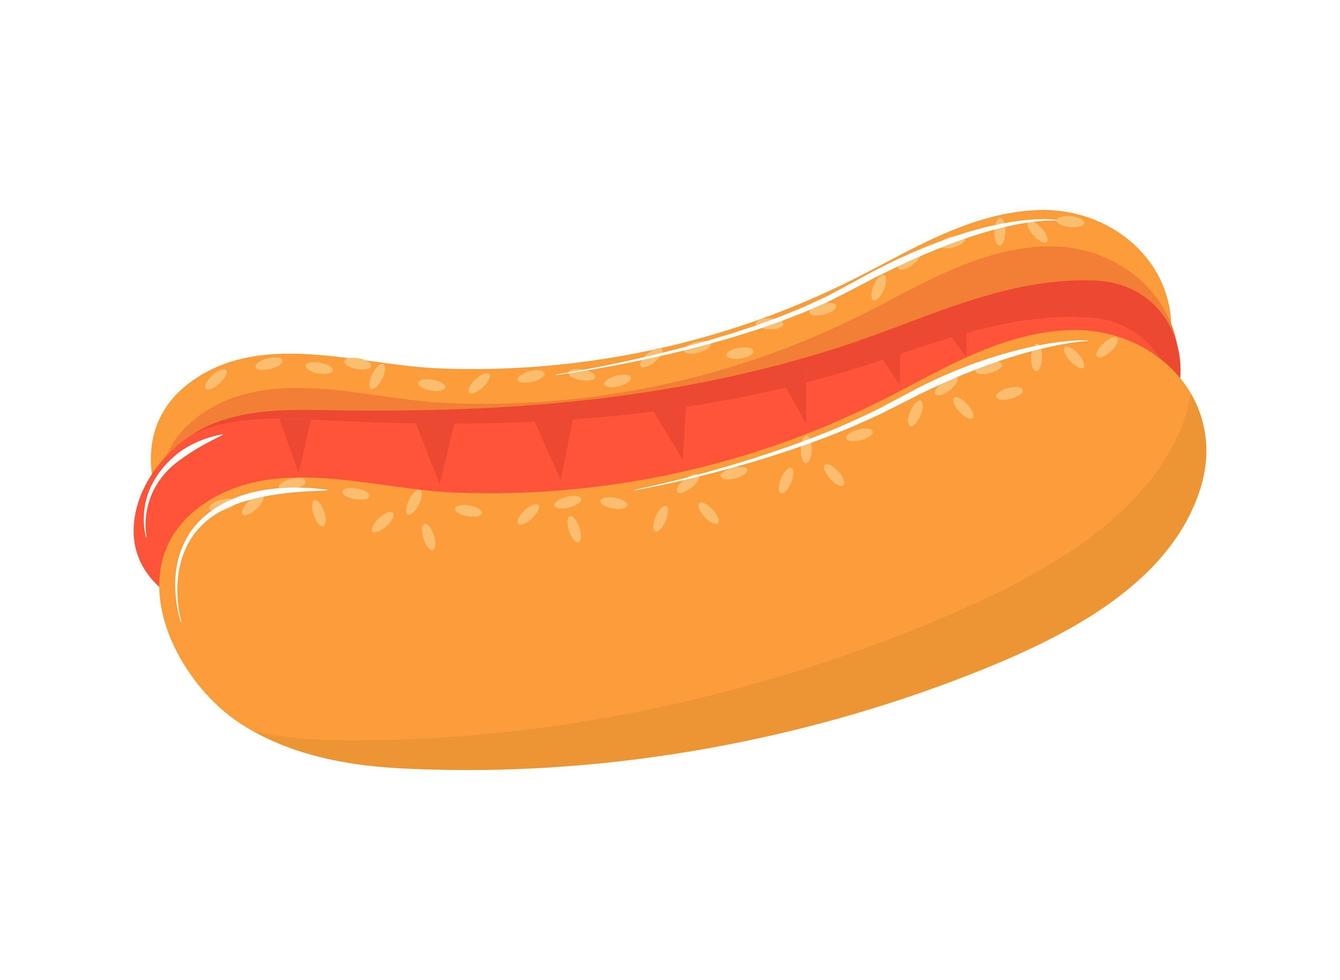 Hotdog-Fastfood vektor